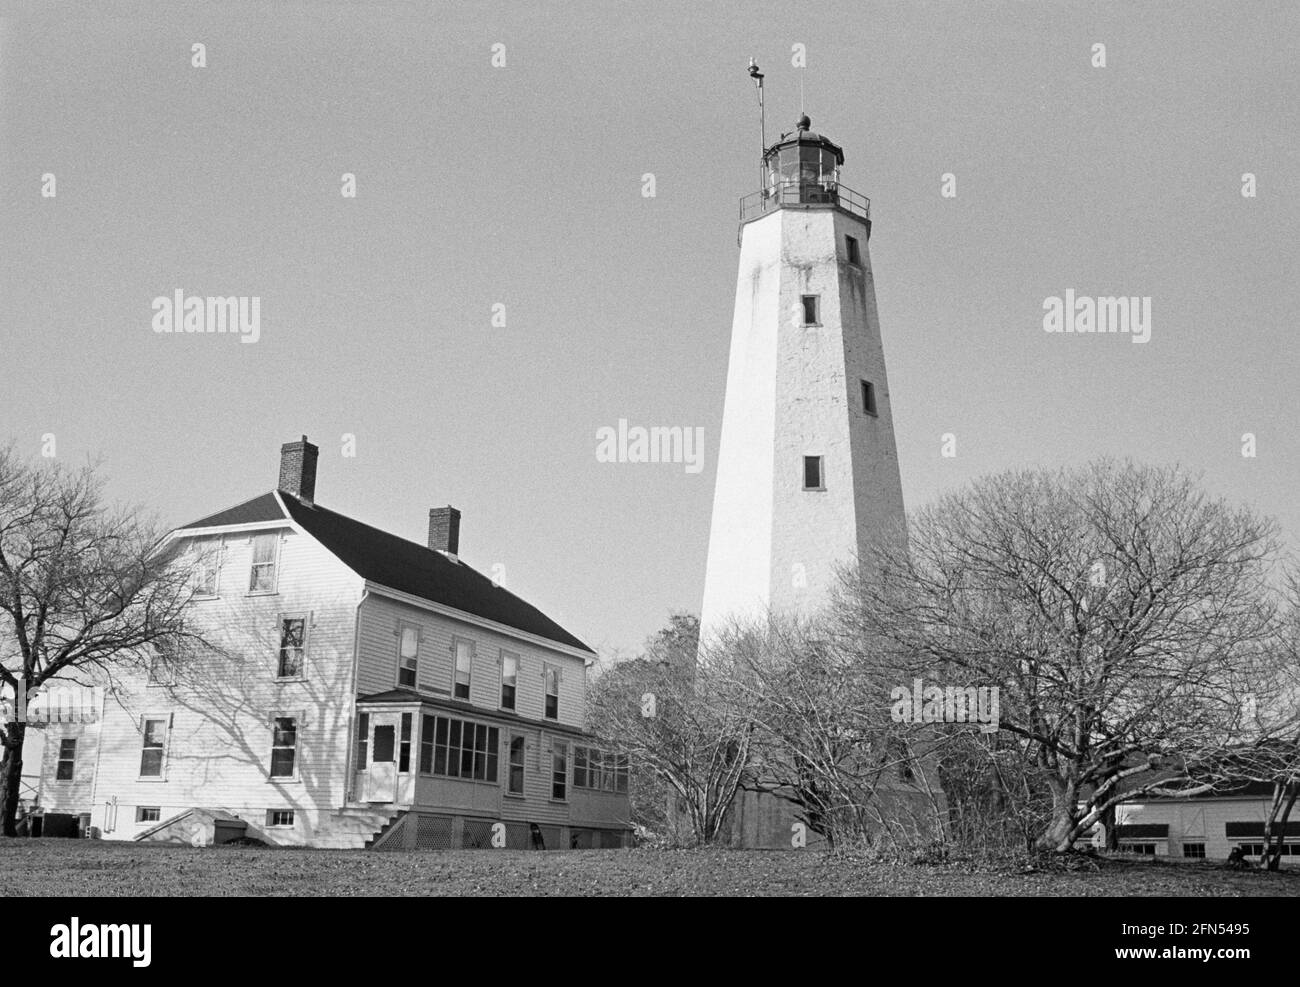 Sandy Hook Lighthouse, Highlands, NJ, November 1992. Teil einer Serie von 35 Leuchttürmen an der amerikanischen Ostküste, die zwischen November 1992 und September 1993 fotografiert wurden. Stockfoto